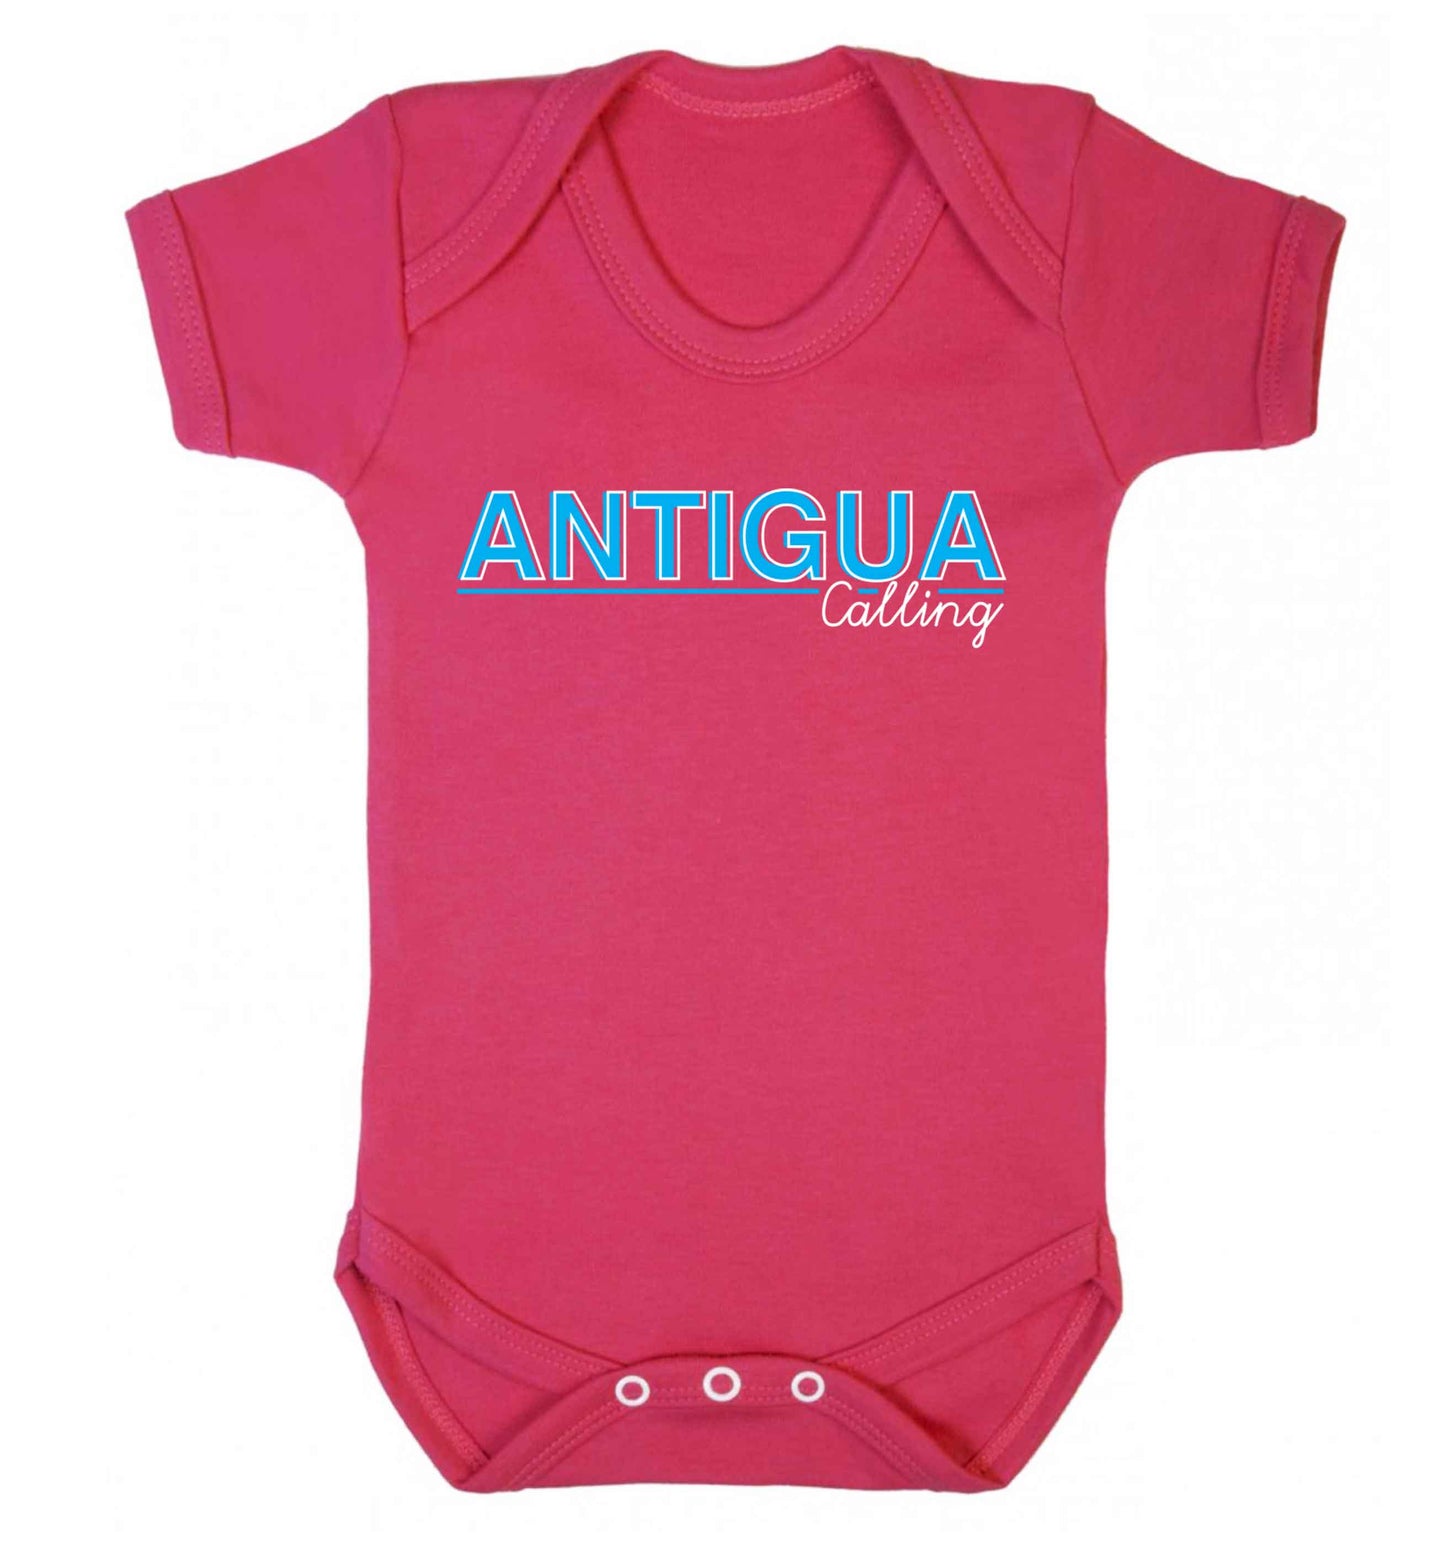 Antigua calling Baby Vest dark pink 18-24 months